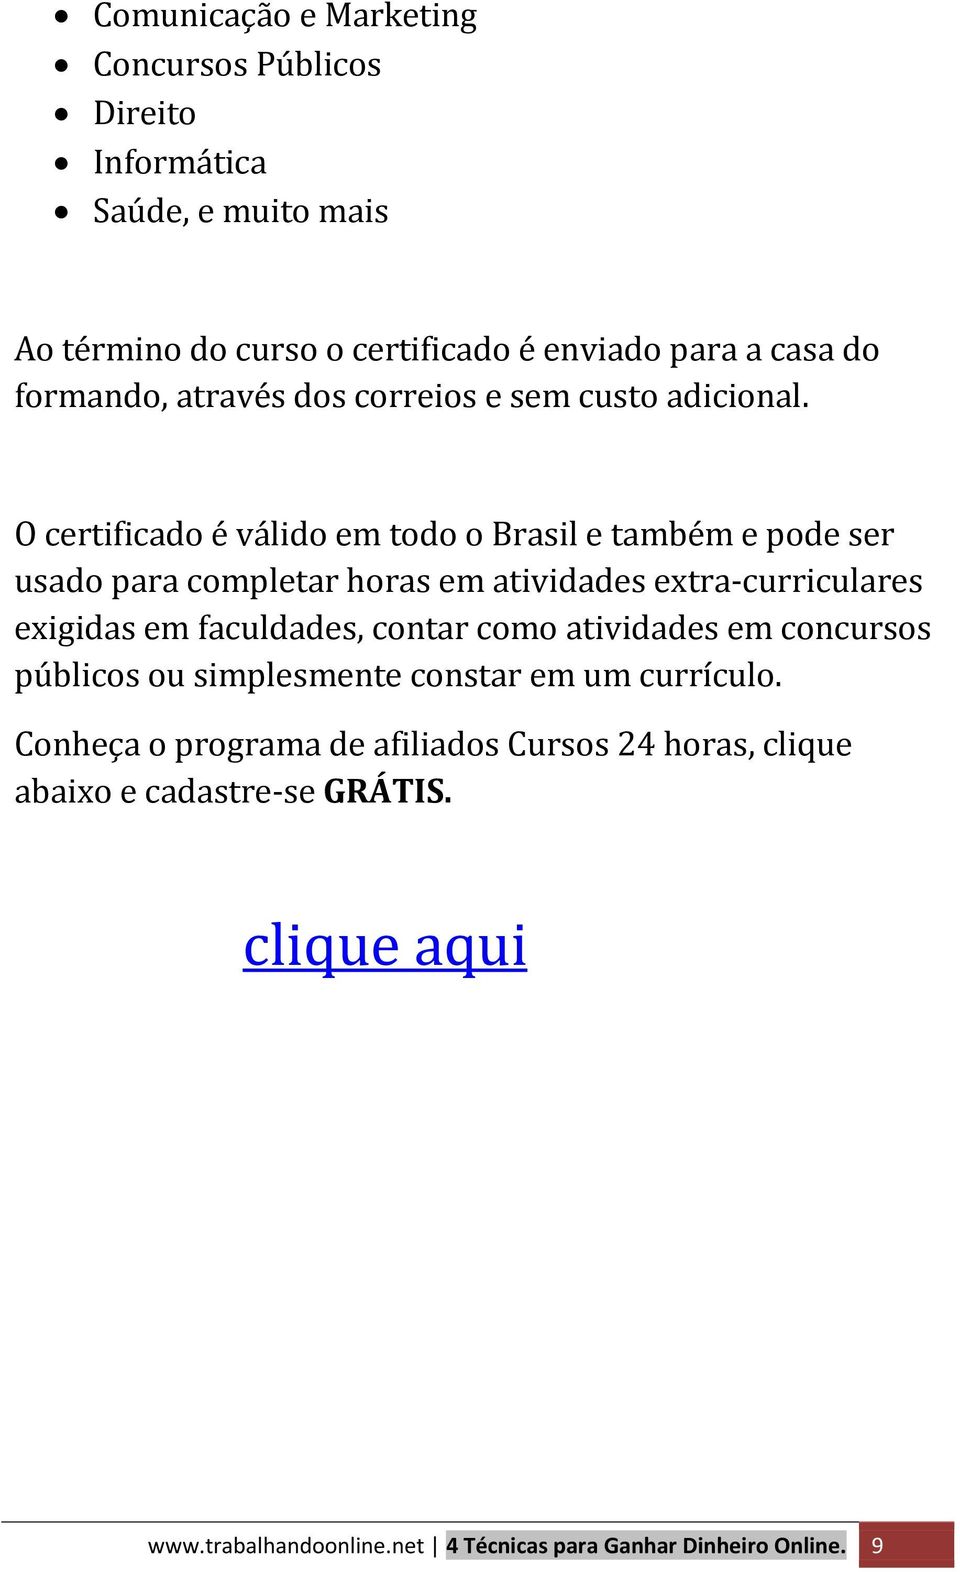 O certificado é válido em todo o Brasil e também e pode ser usado para completar horas em atividades extra-curriculares exigidas em faculdades,